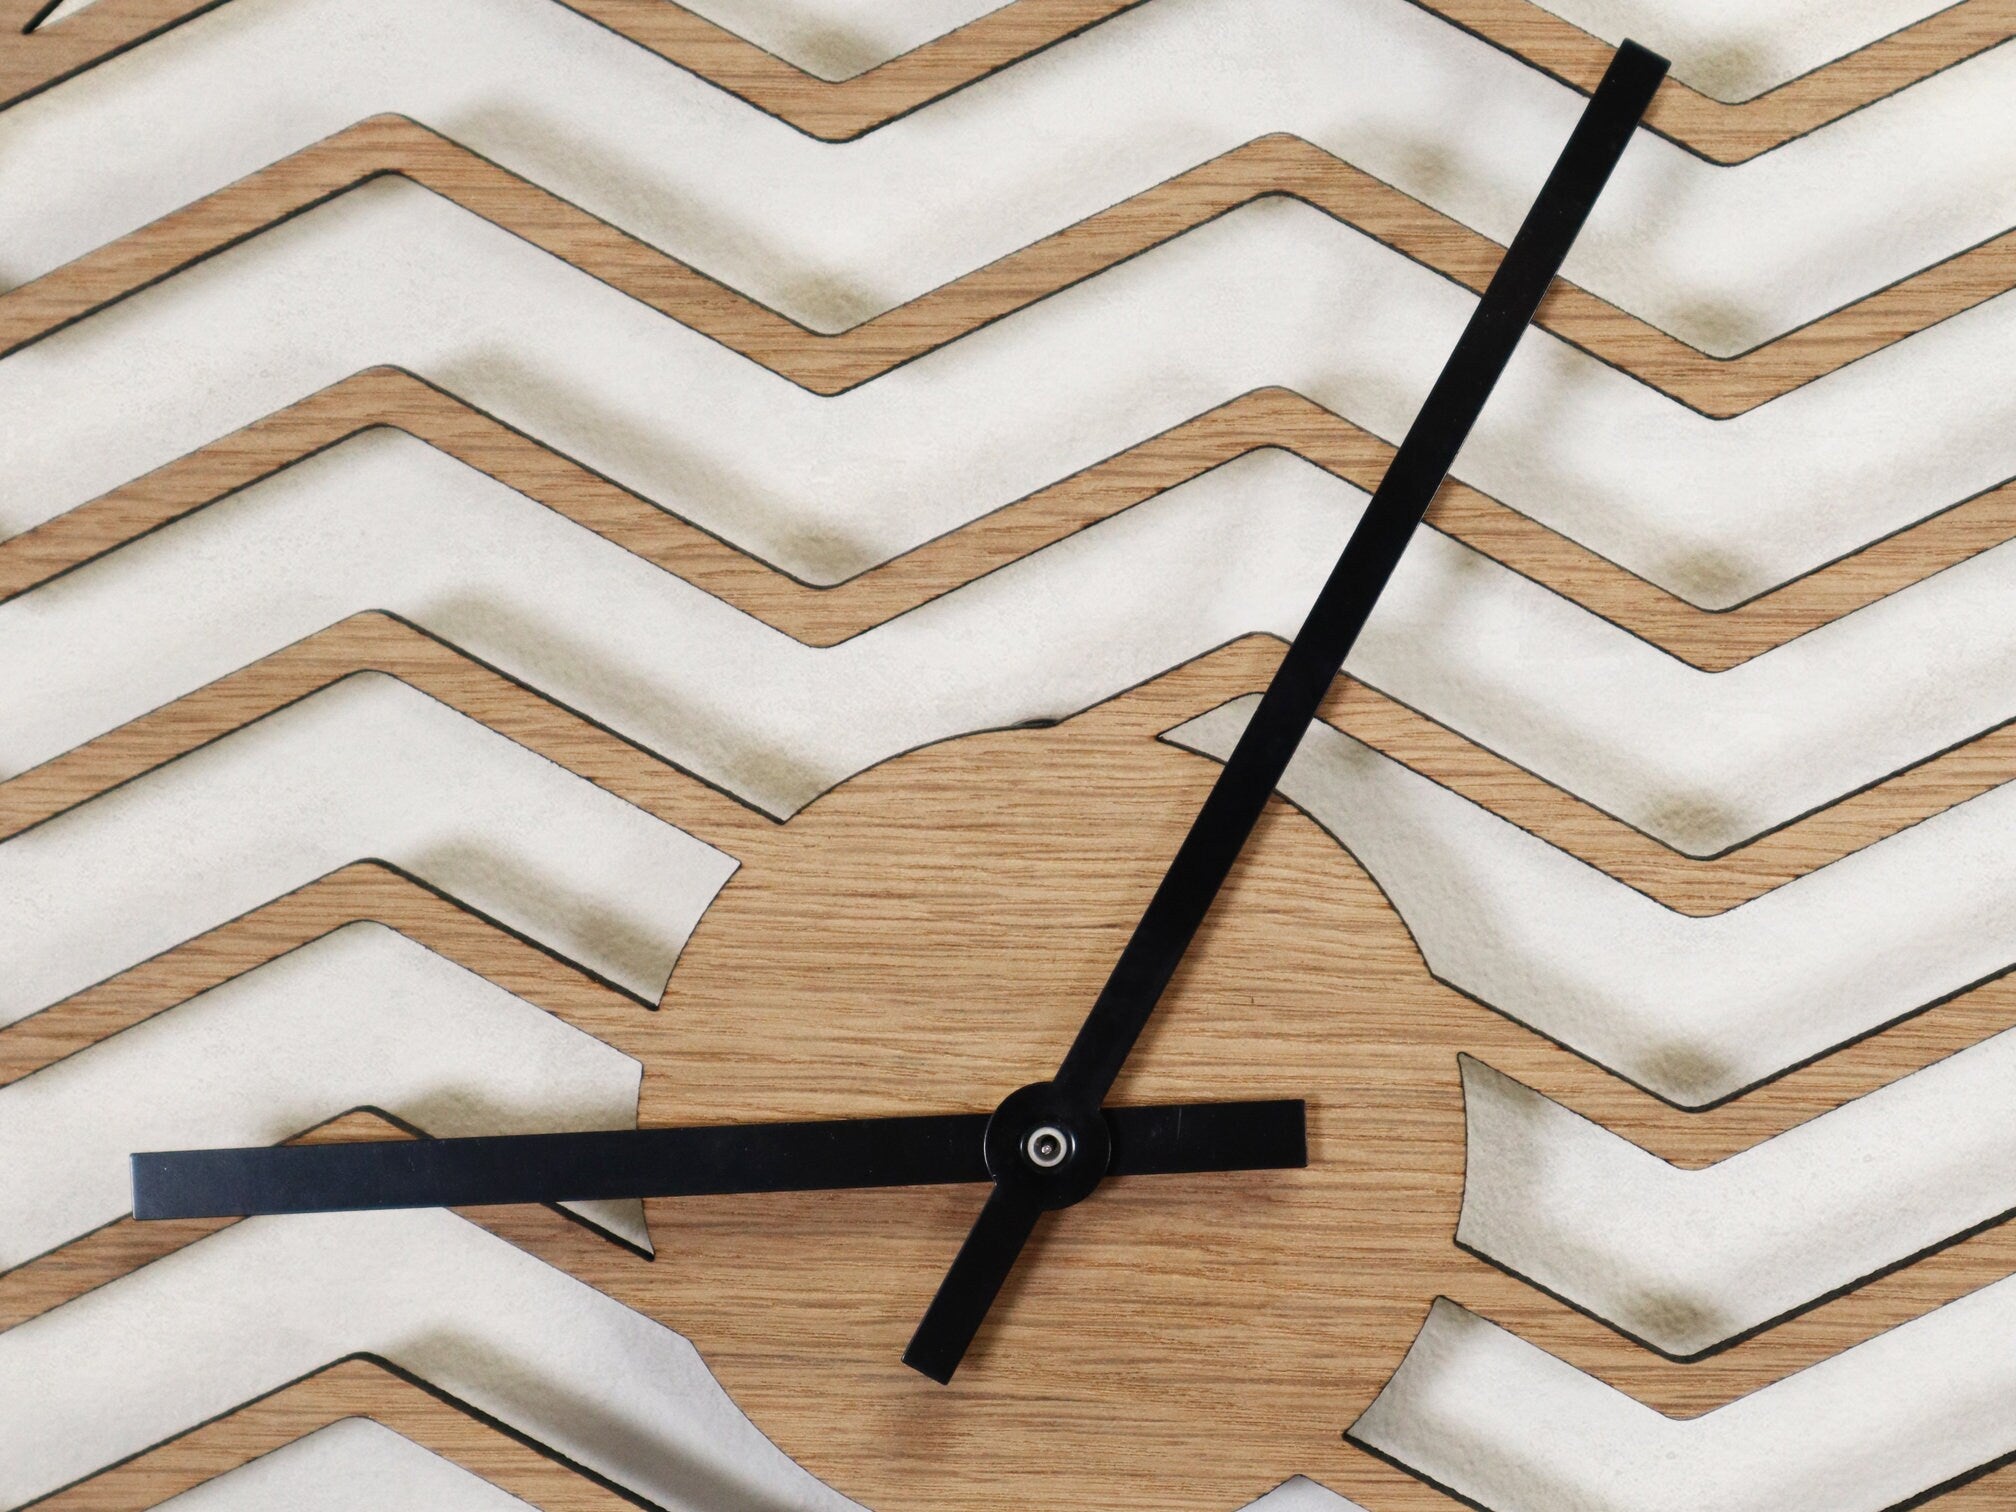 Minimalistic Wooden Geometric Wall Clock - Zig Zag Design